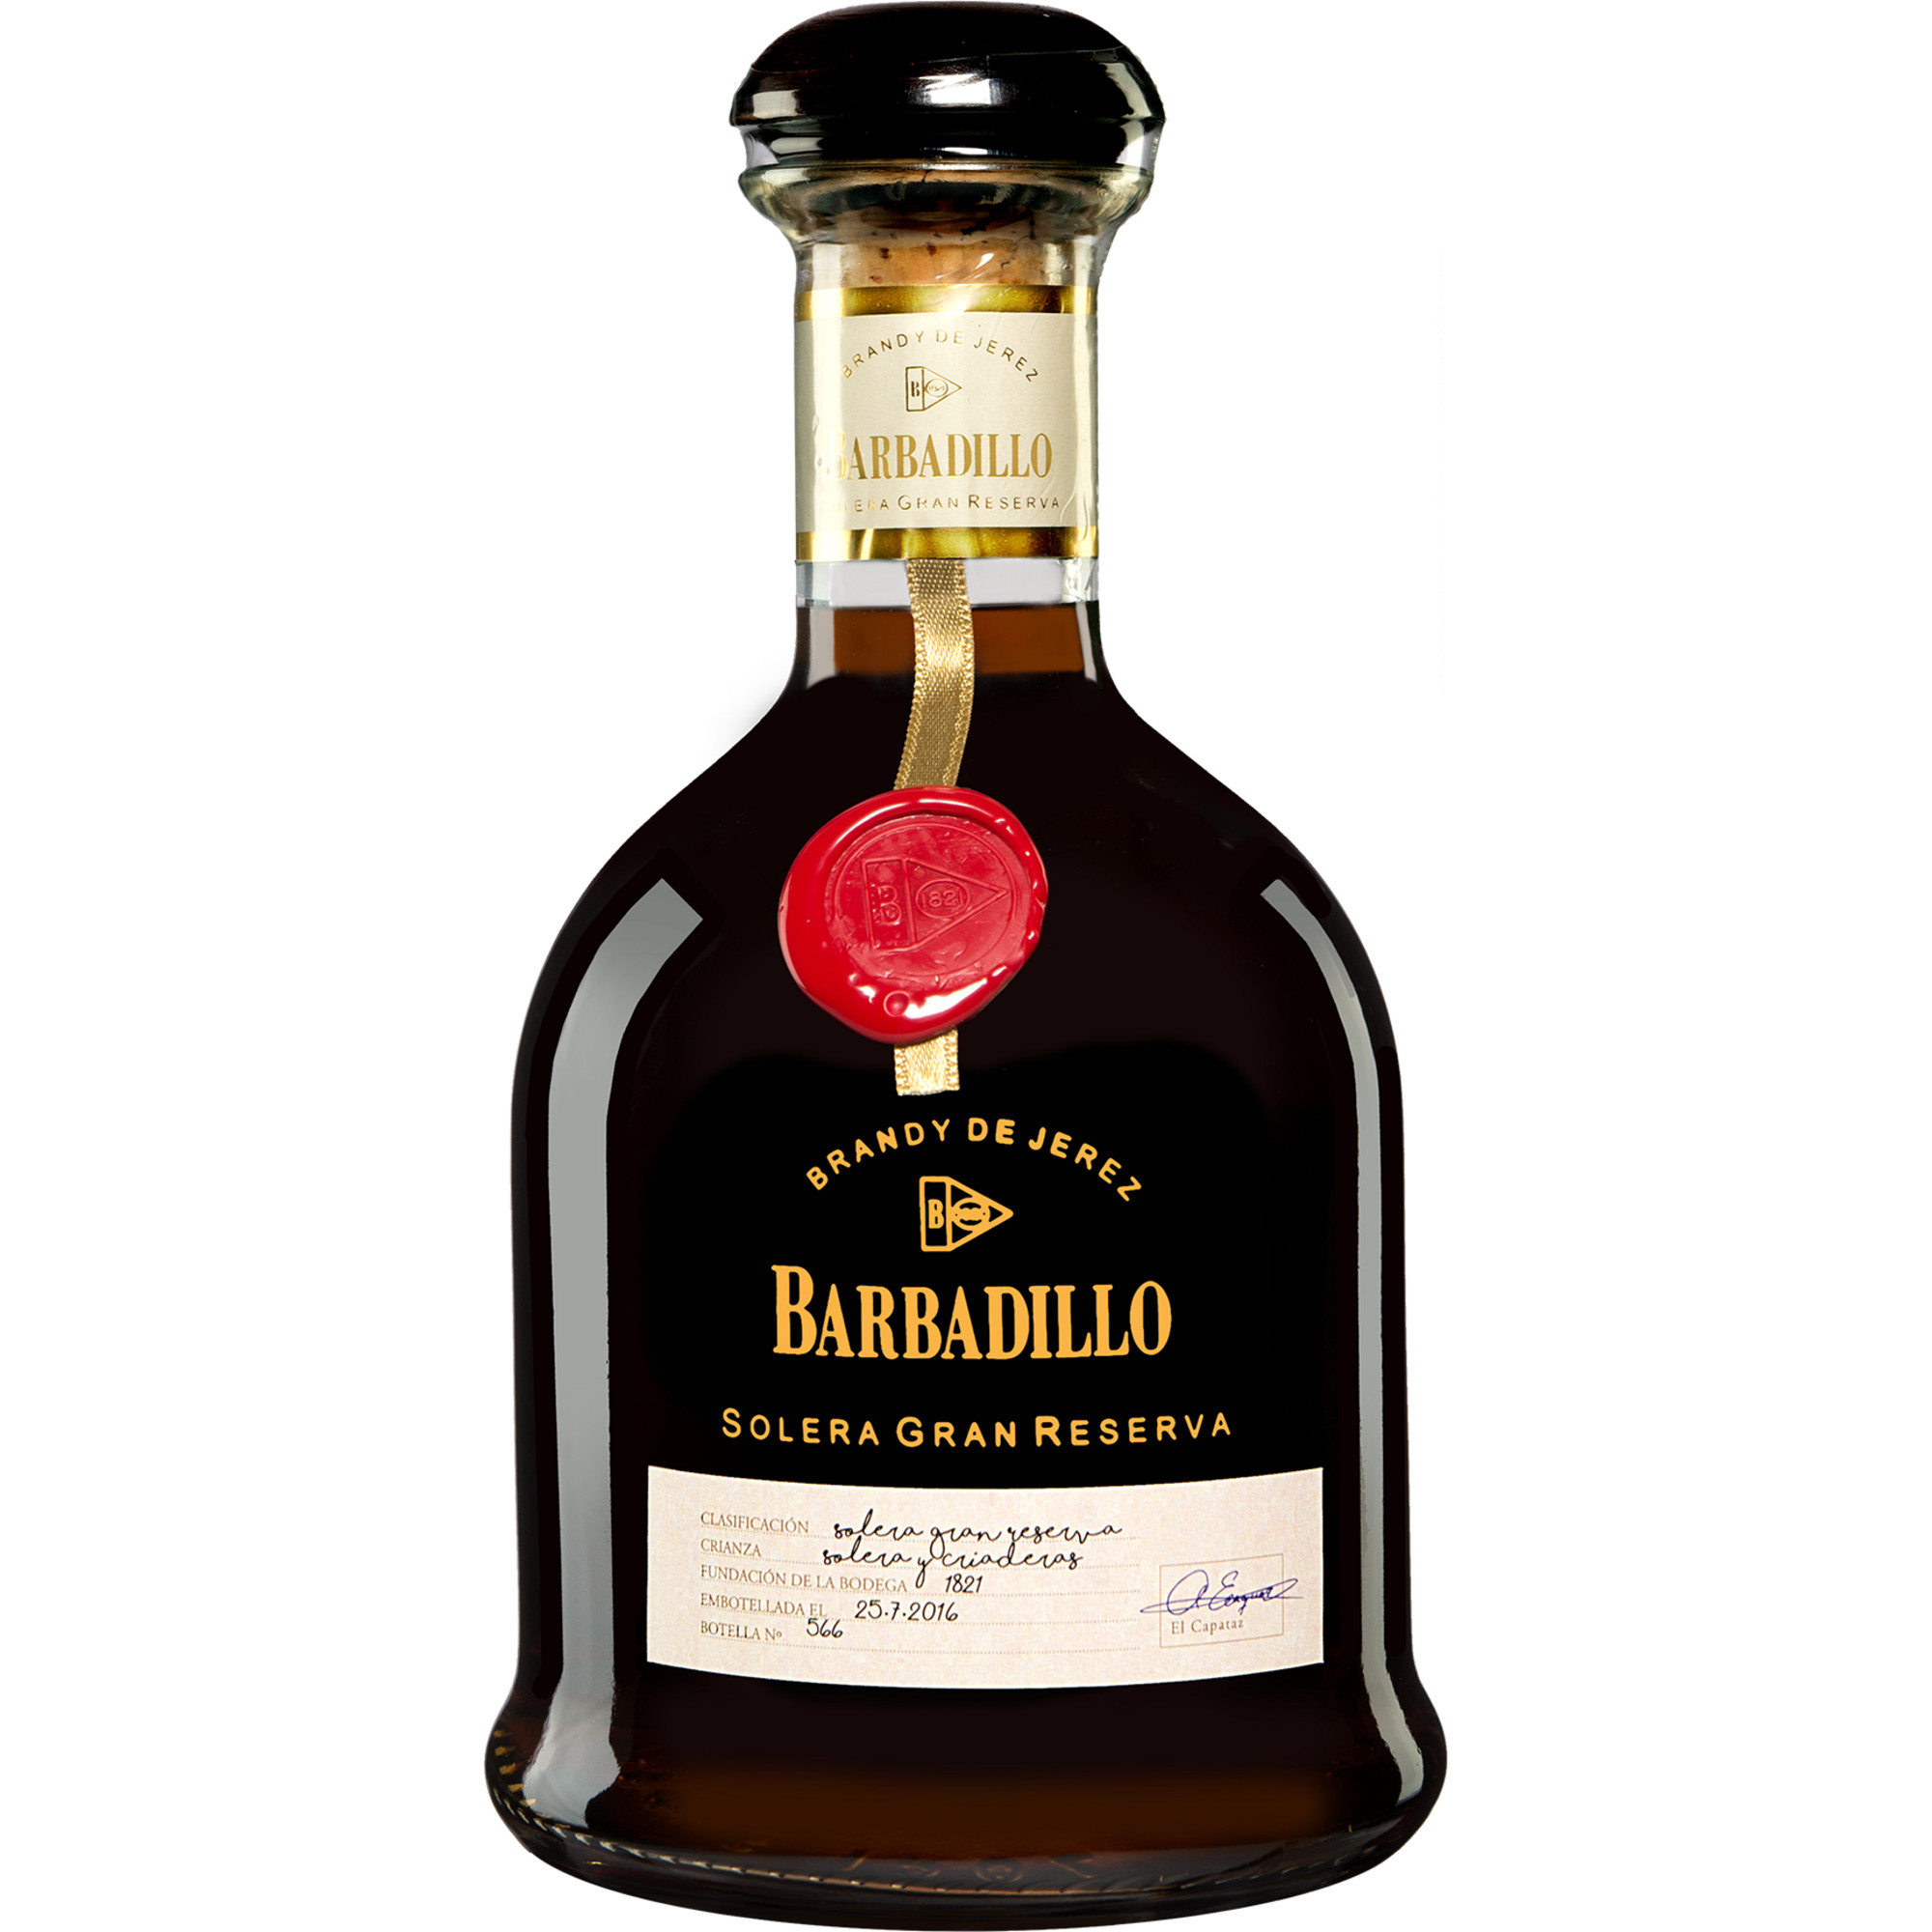 Image of Barbadillo Brandy de Jerez Gran Reserva 40% 0,7l (111,29 &euro; pro 1 l)